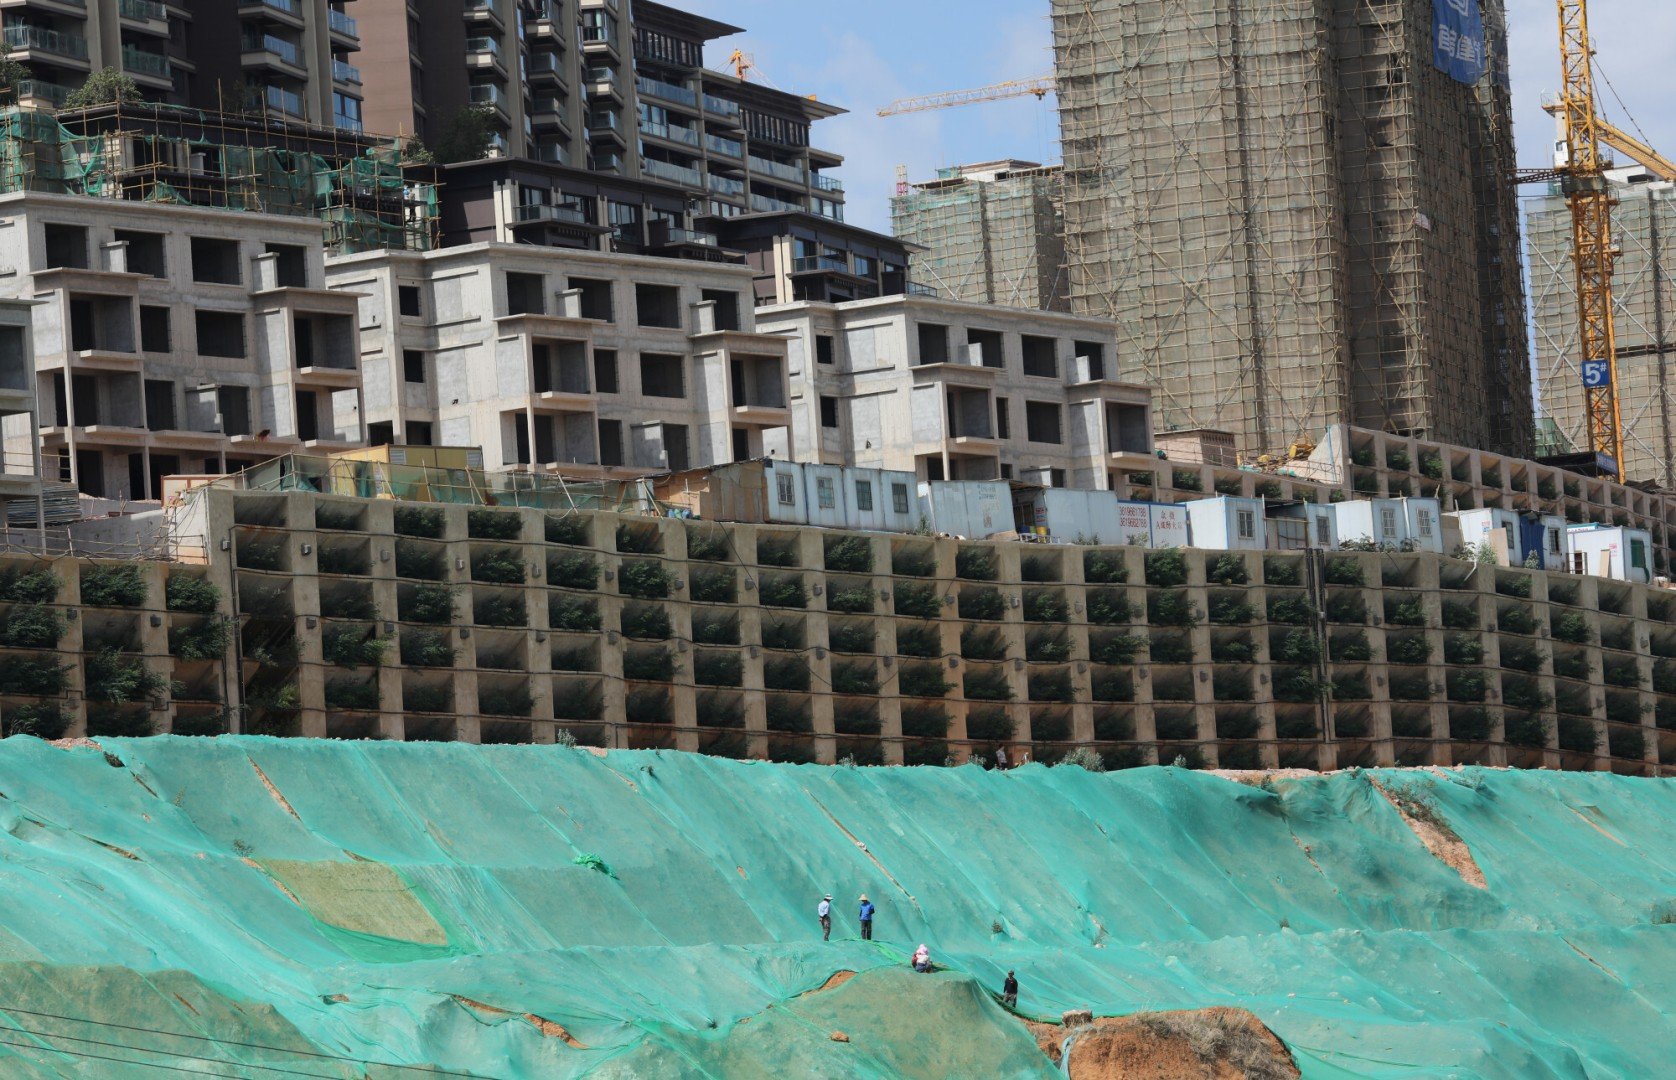 Sốt BĐS, một ngọn núi ở Trung Quốc từng bị bê tông hóa với hơn 1.000 biệt thự và căn hộ: Là công trình xây dựng trái phép, buộc phải dỡ bỏ vì phá hủy môi trường - Ảnh 4.